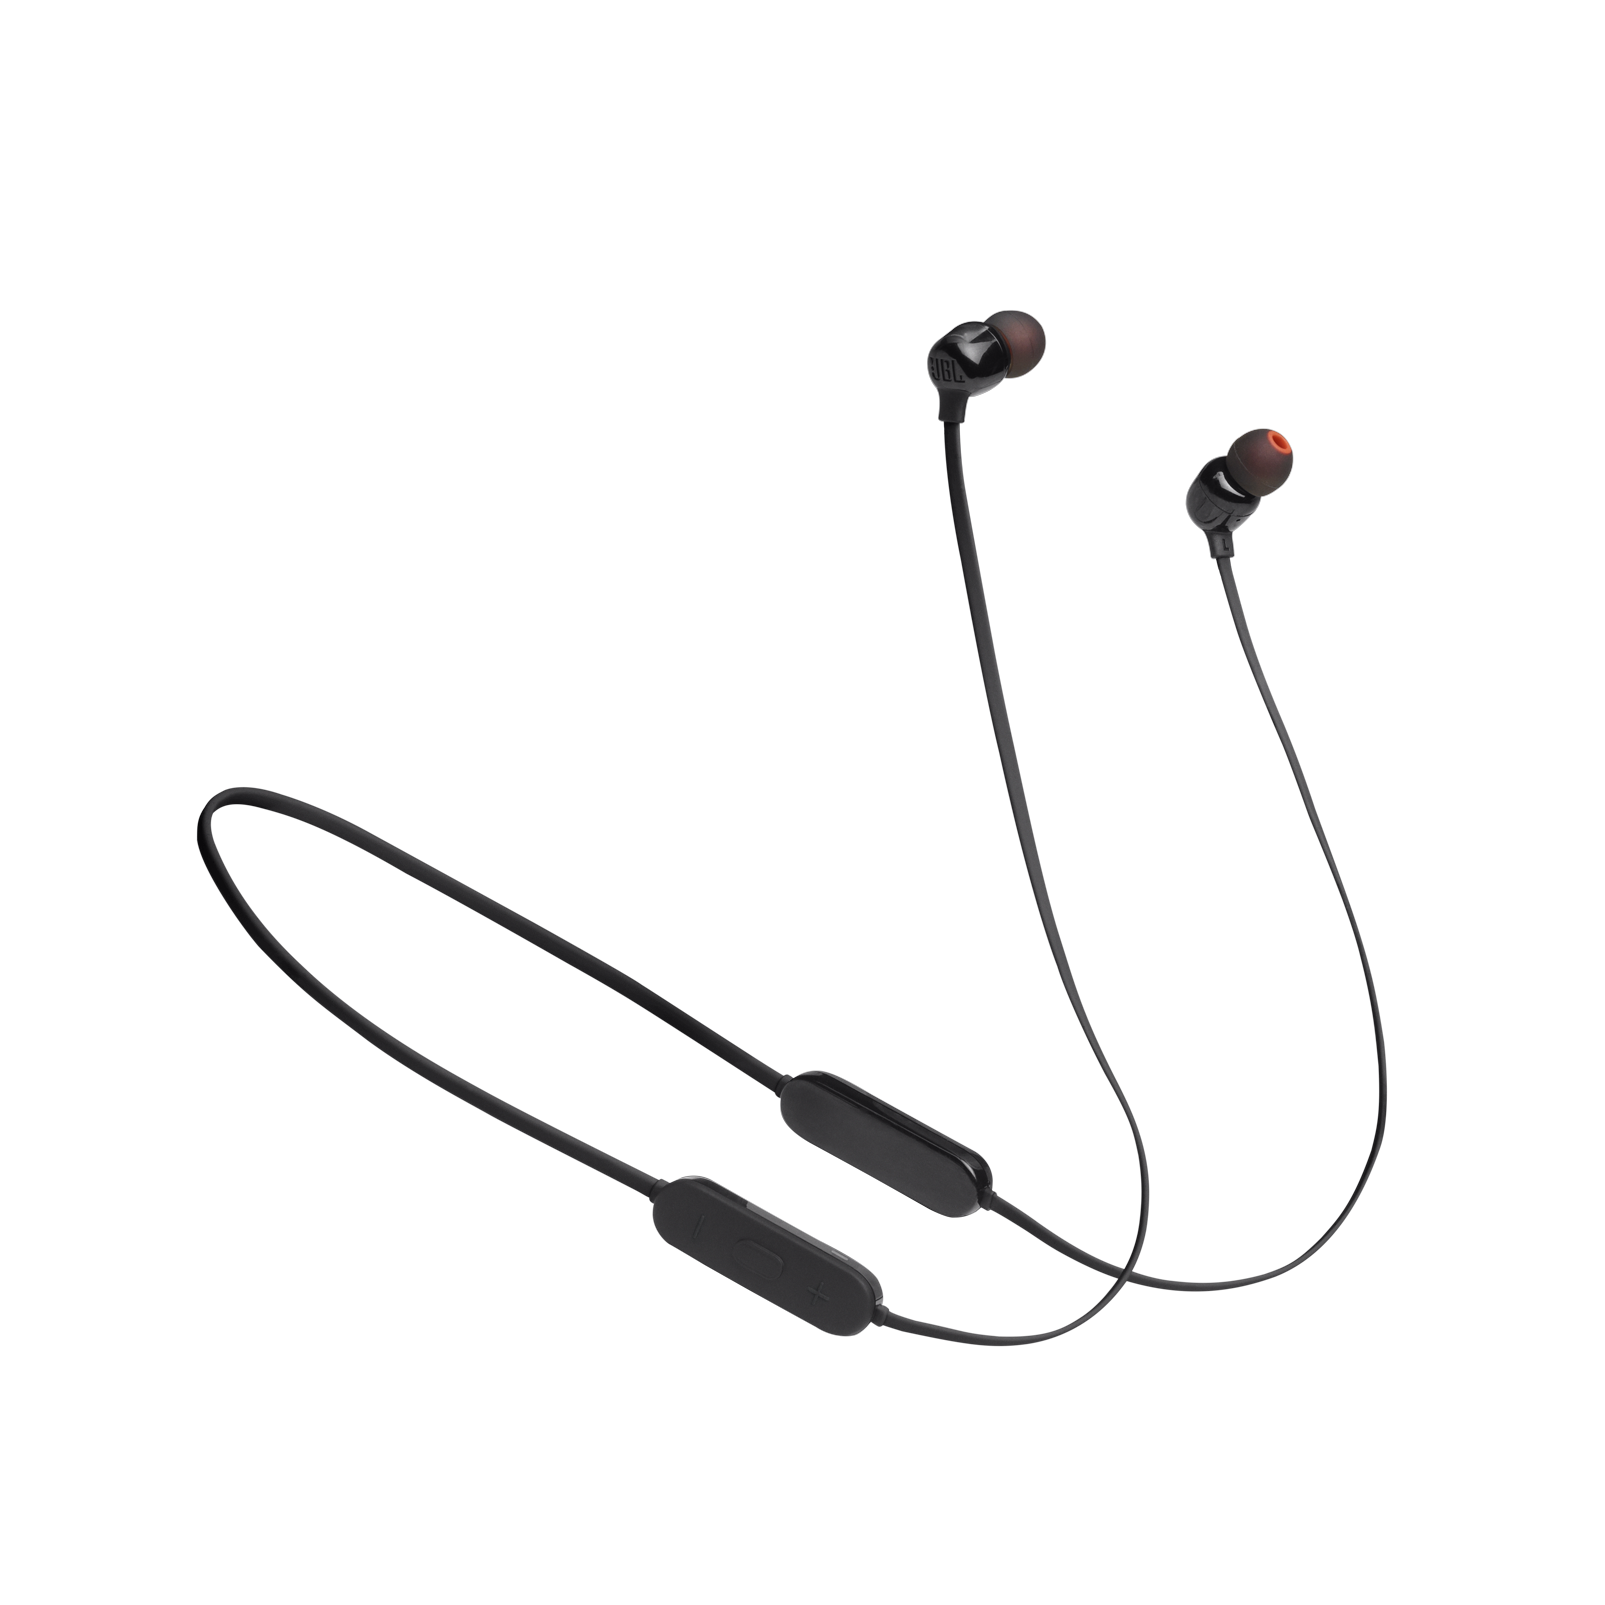 JBL Tune 125BT - Black - Wireless in-ear headphones - Hero